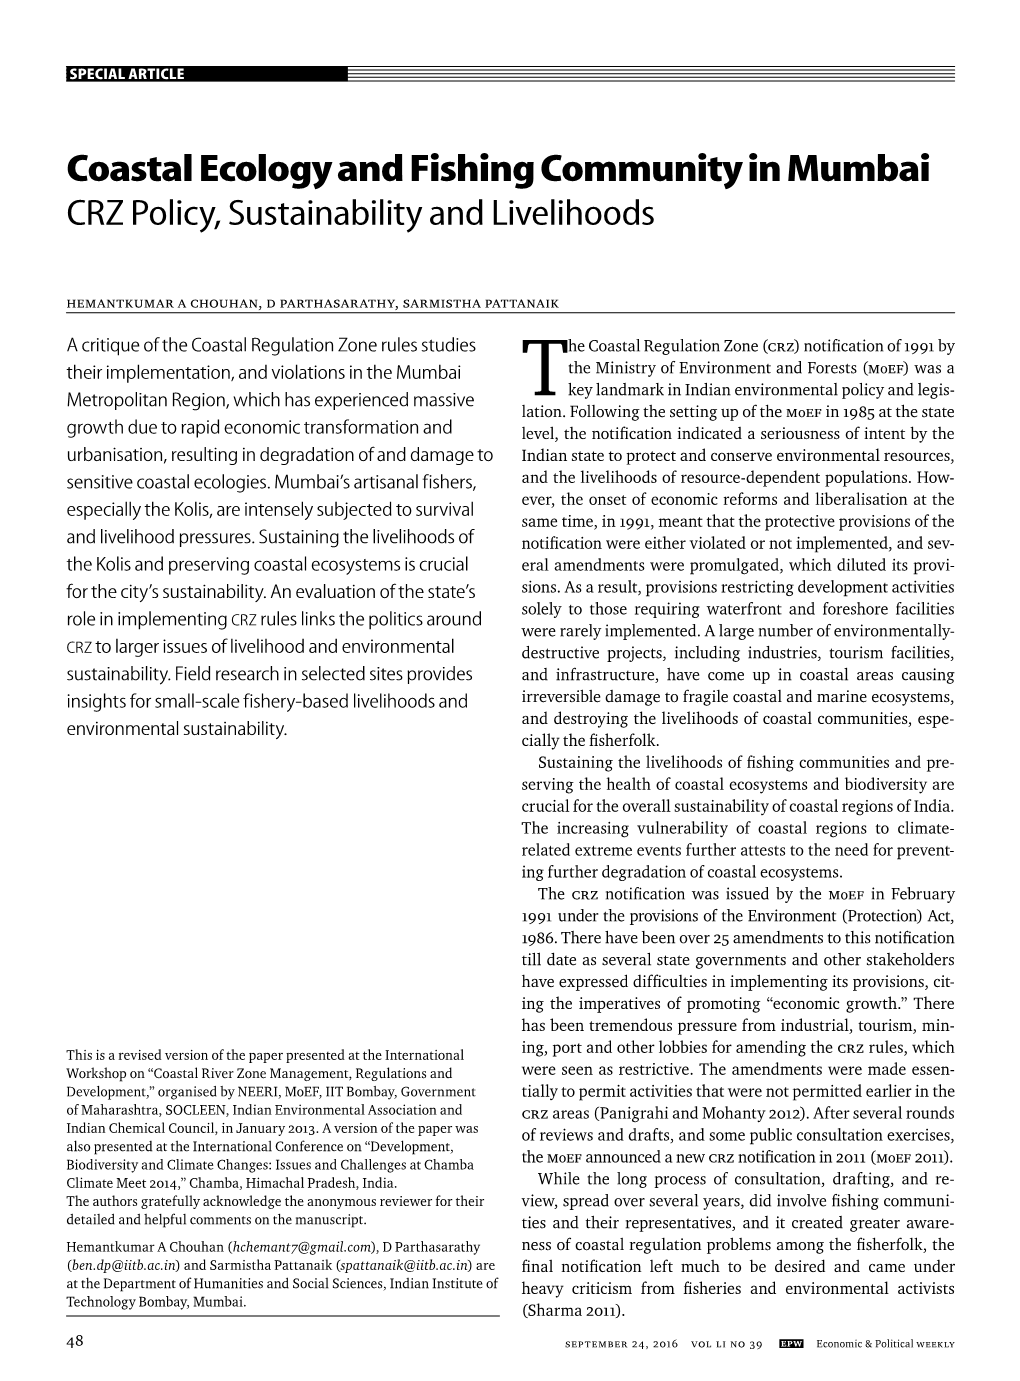 Coastal Ecology and Fishing Community in Mumbai CRZ Policy, Sustainability and Livelihoods